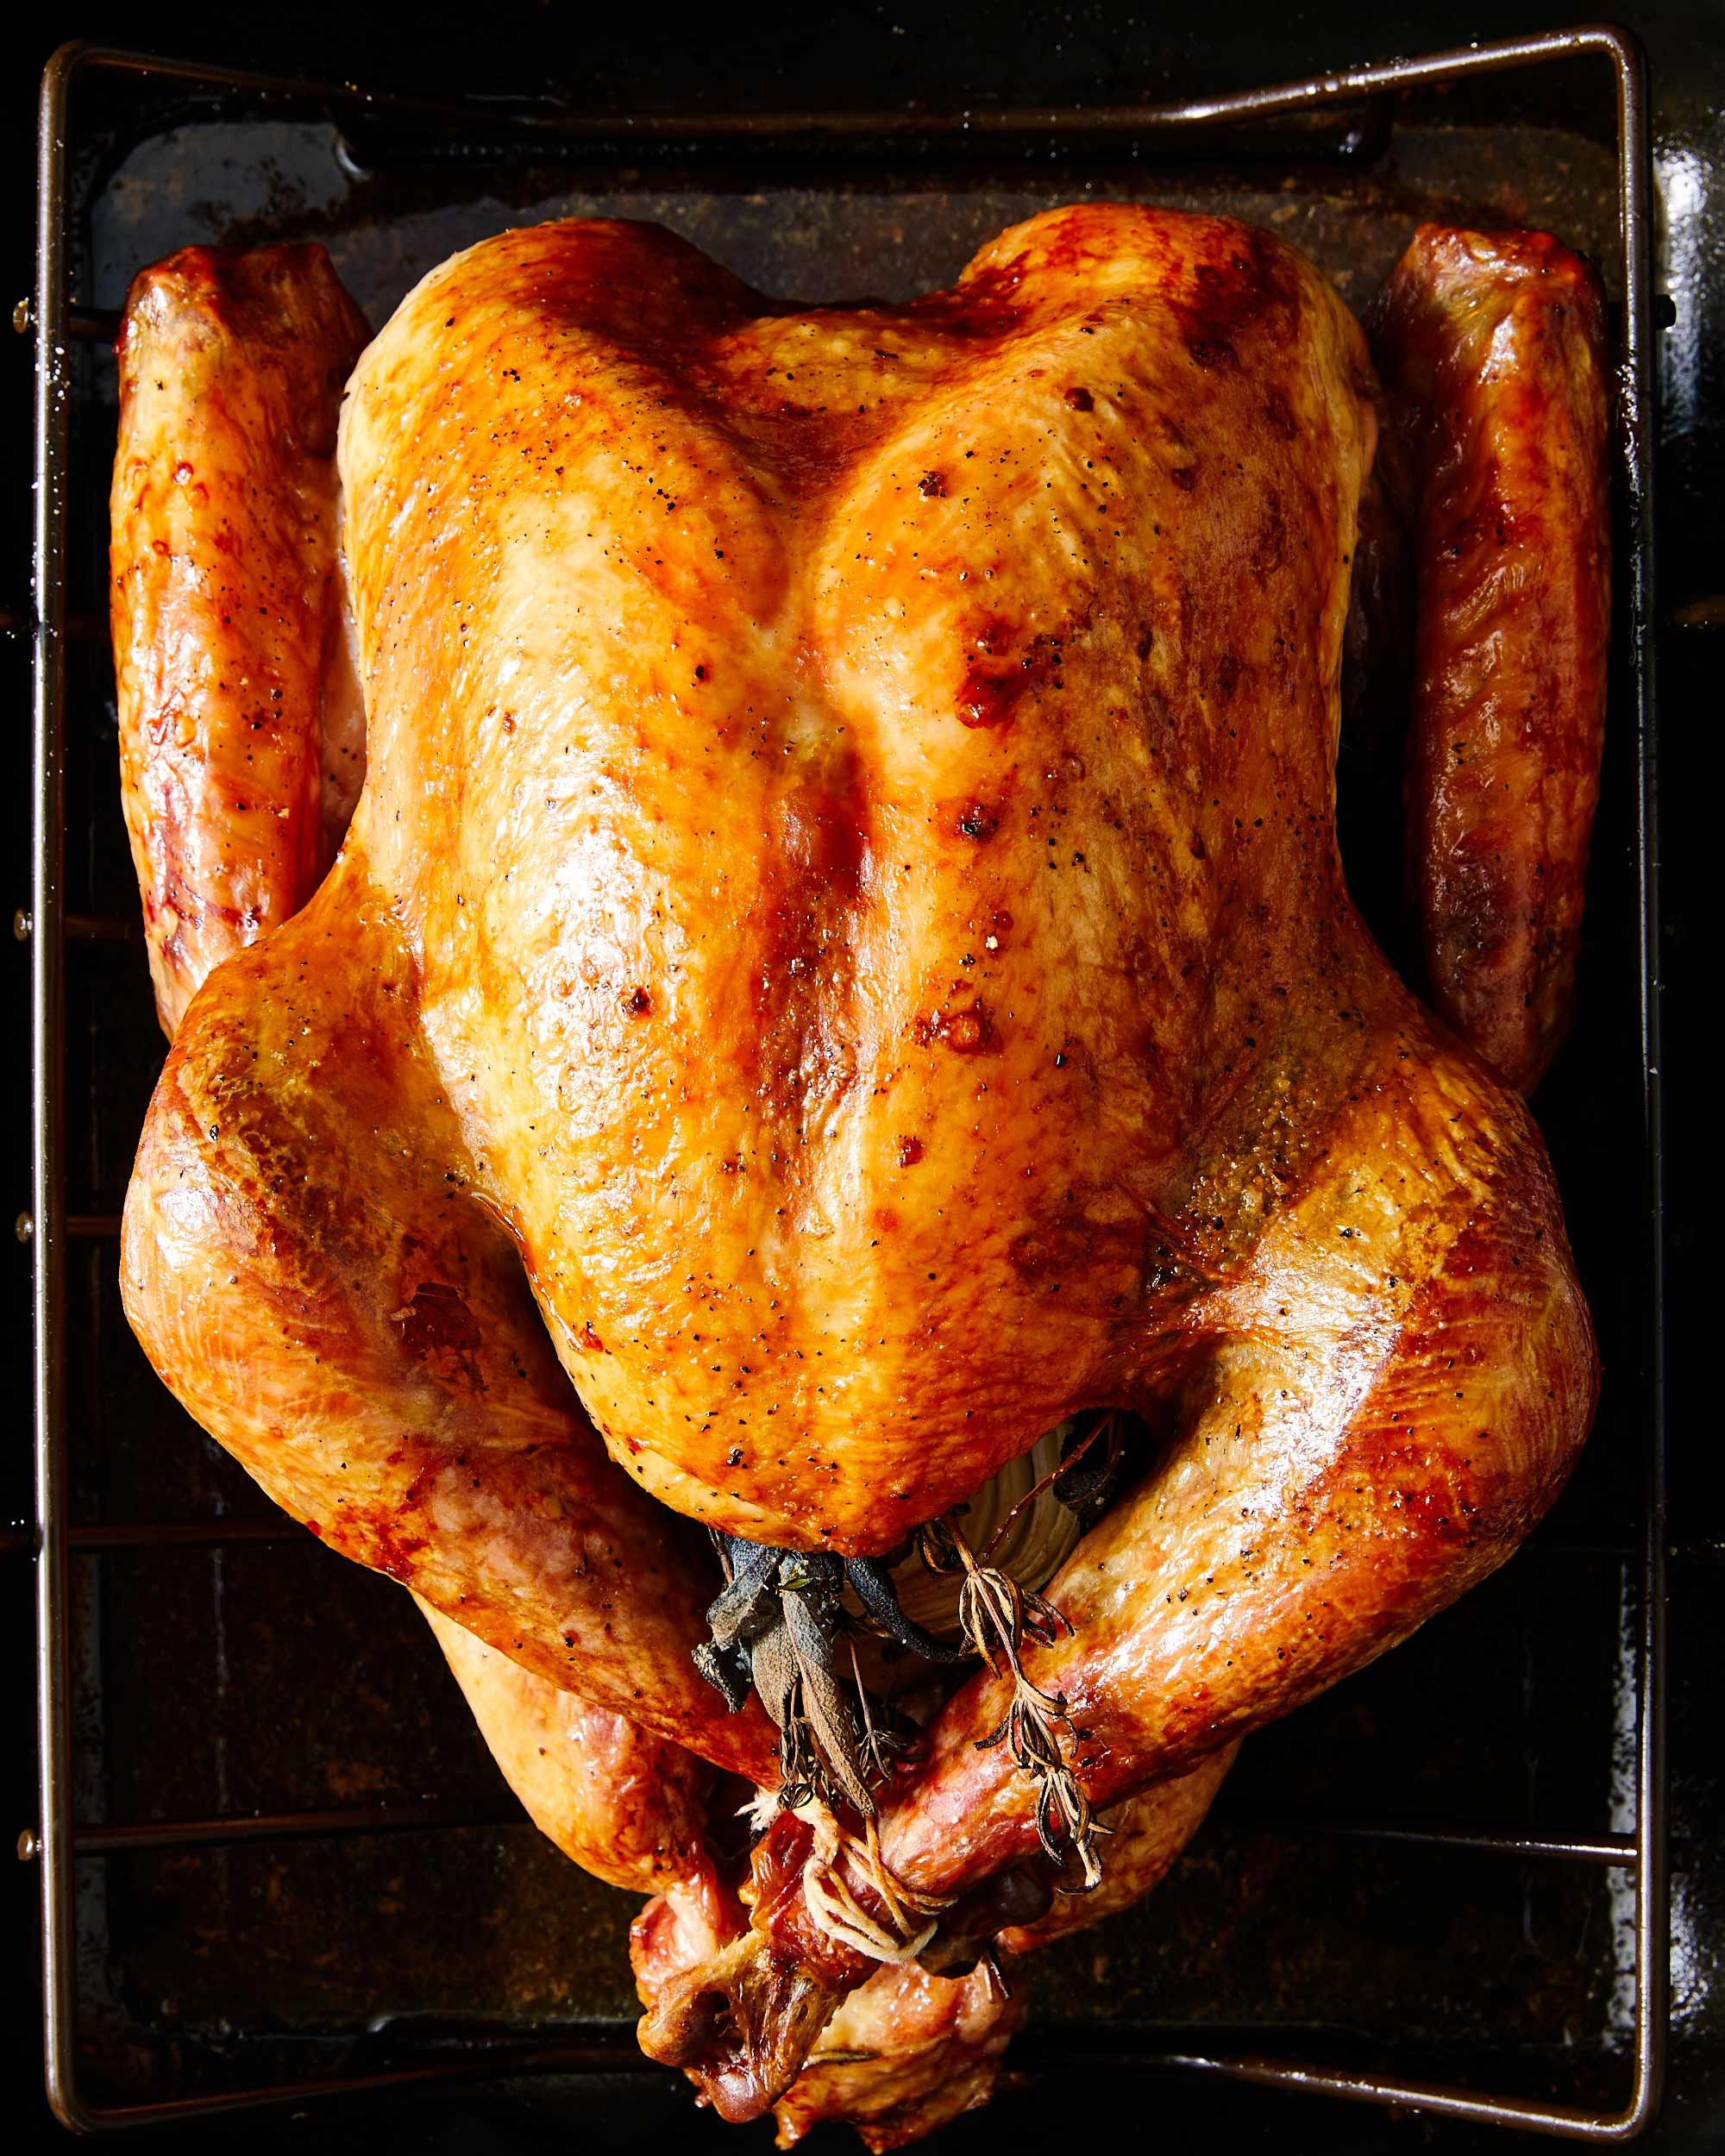 nyc-nj-food-editorial-photographer-roasted-turkey.jpg